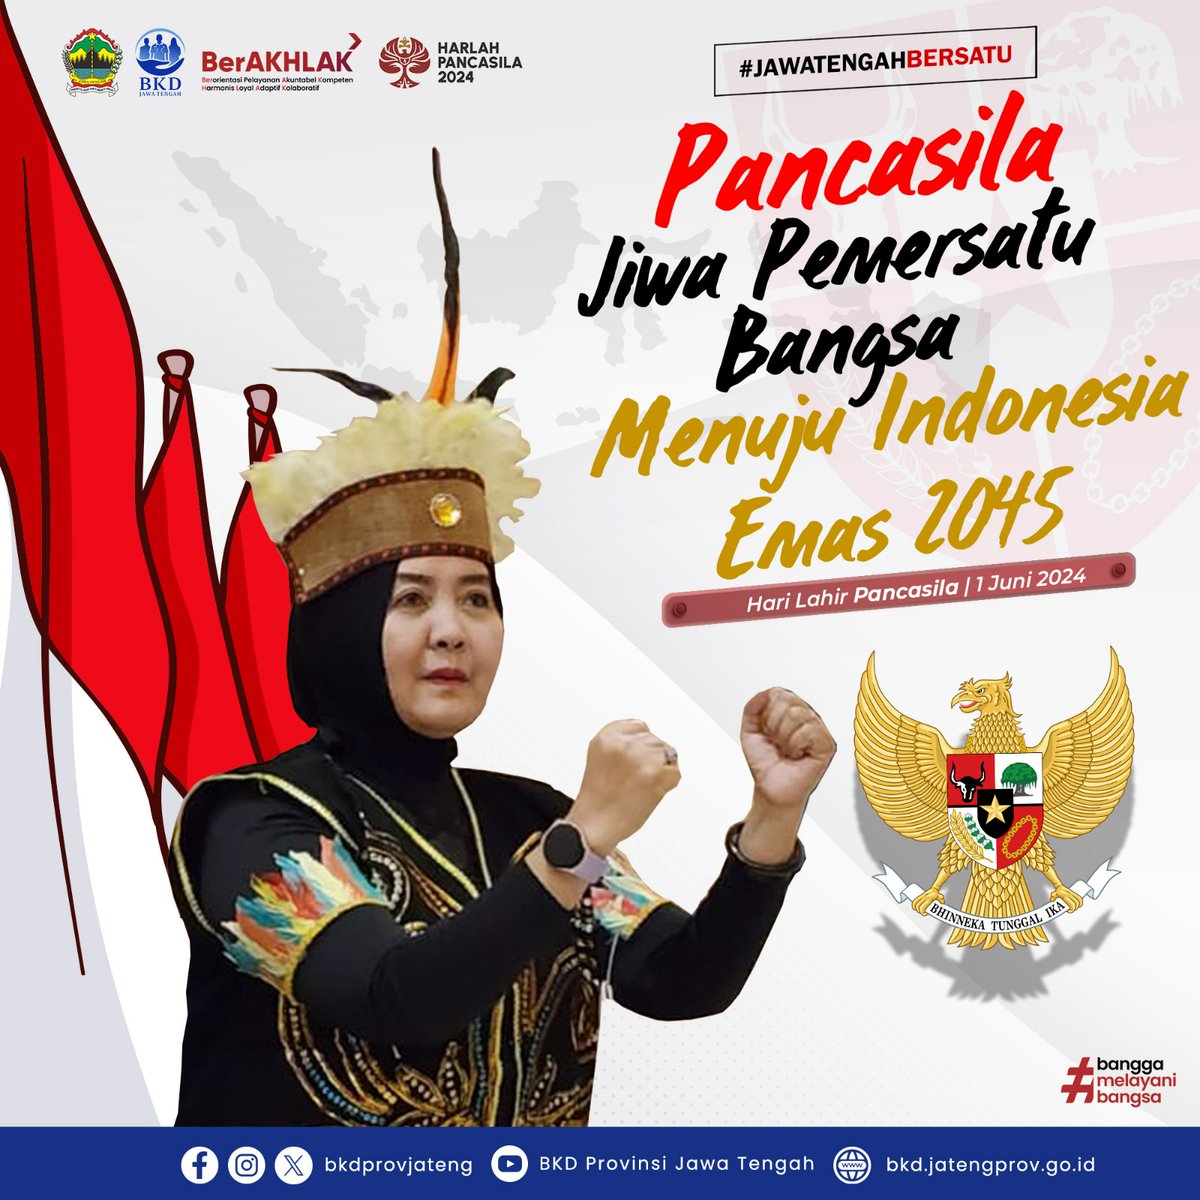 Selamat Hari Lahir Pancasila  1 Juni 2024.

Pancasila menyatukan kita dengan segala perbedaan suku, agama, budaya, dan bahasa dalam menyongsong 100 tahun Indonesia emas yang maju, mandiri dan berdaulat.

#ASNBerakhlak #BKDProvJateng @kipjateng @ppid_jateng